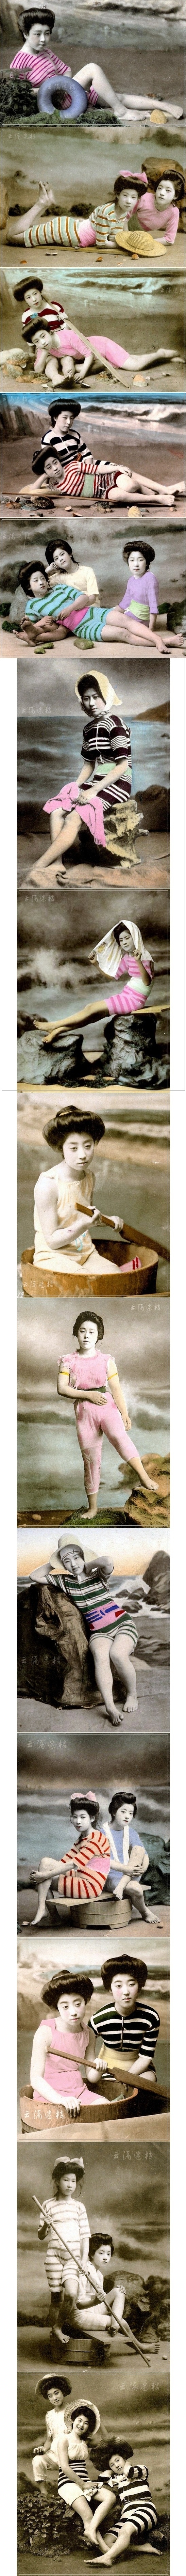 100년전 일본 여성의 수영복 패션